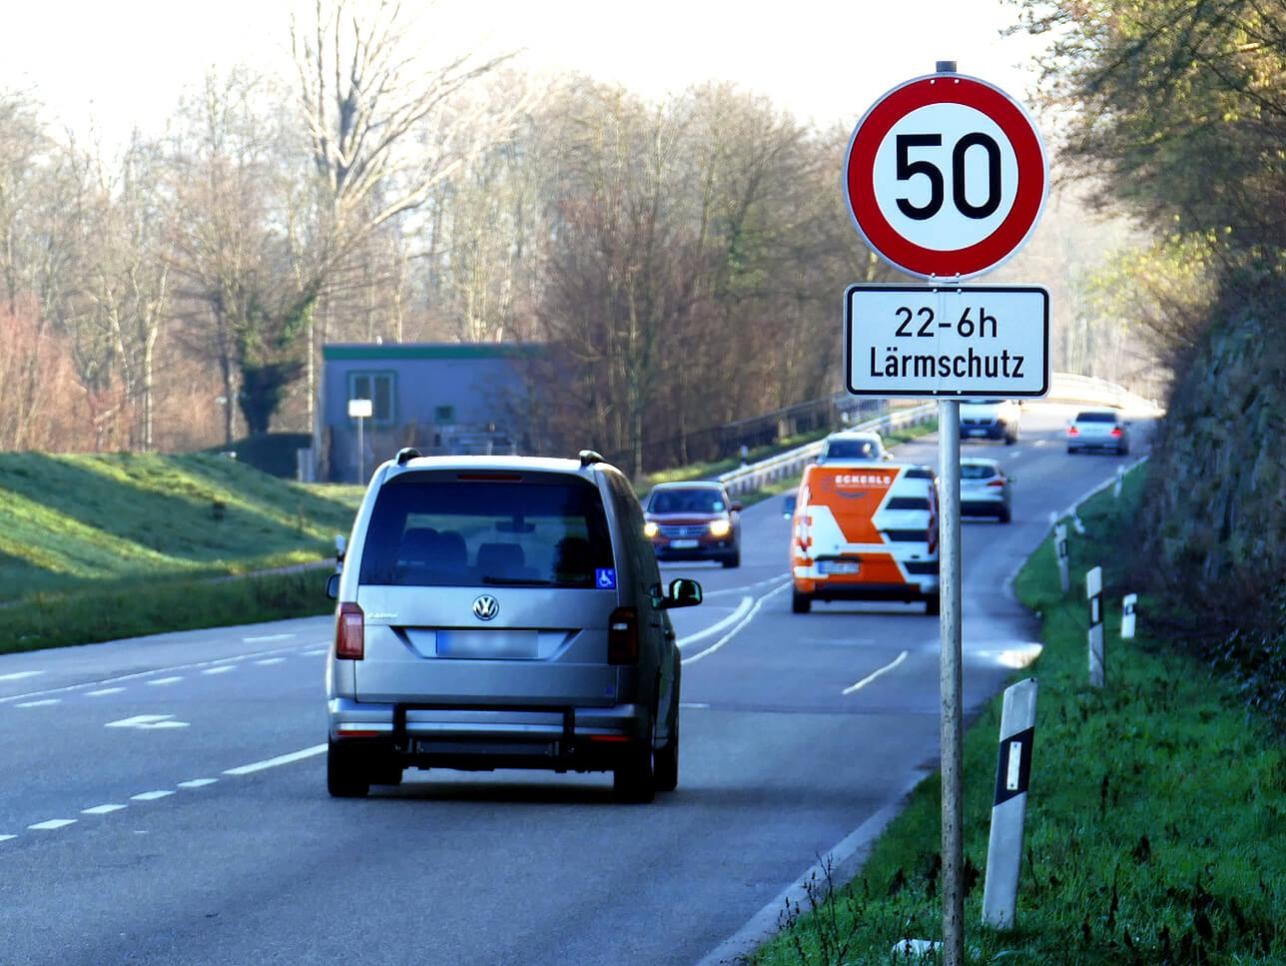 Straße in Rastatt mit Autos, Tempolimit 50 und Lärmschutzschild